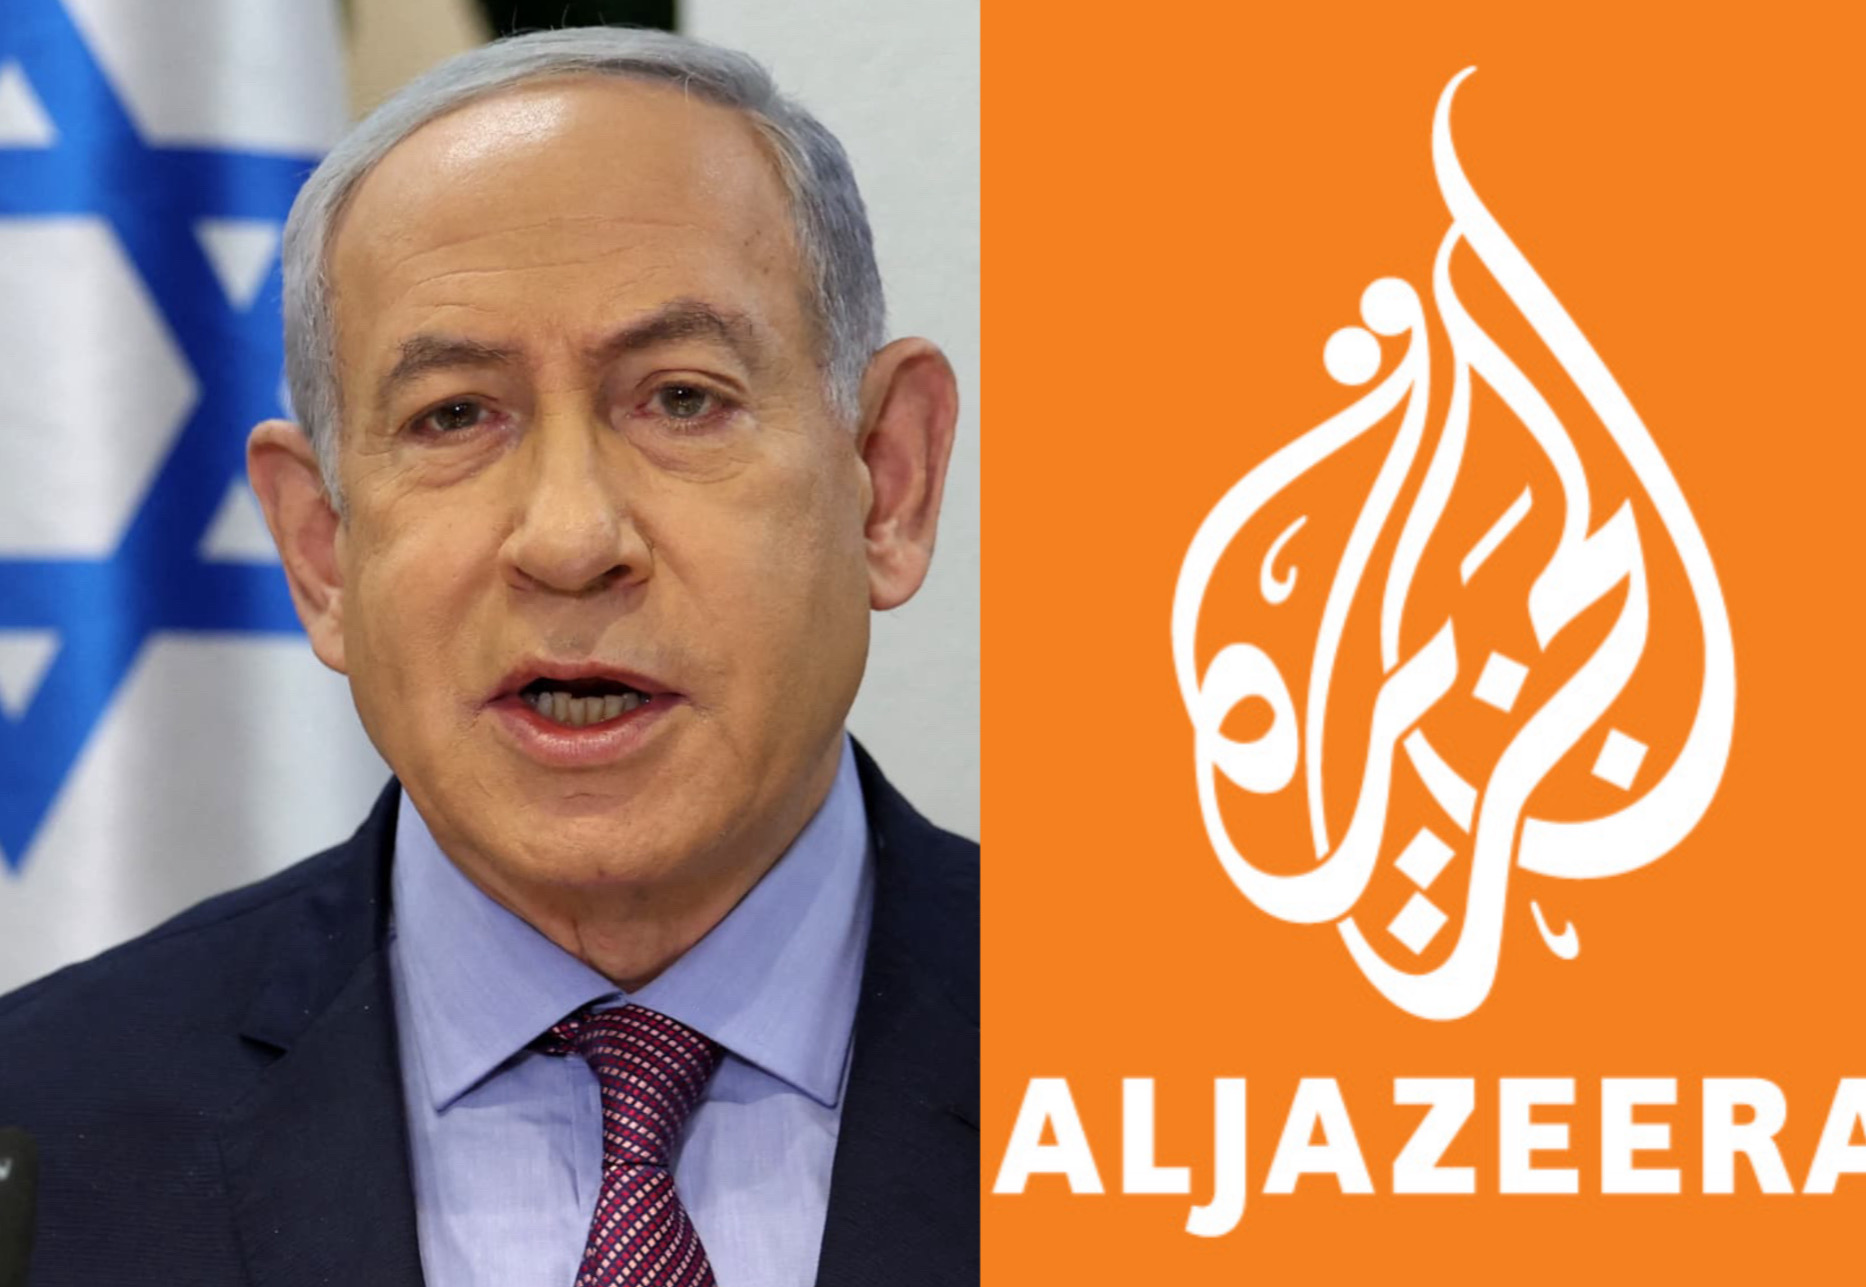 Le gouvernement israélien ferme la chaîne Al-Jazeera dans le pays